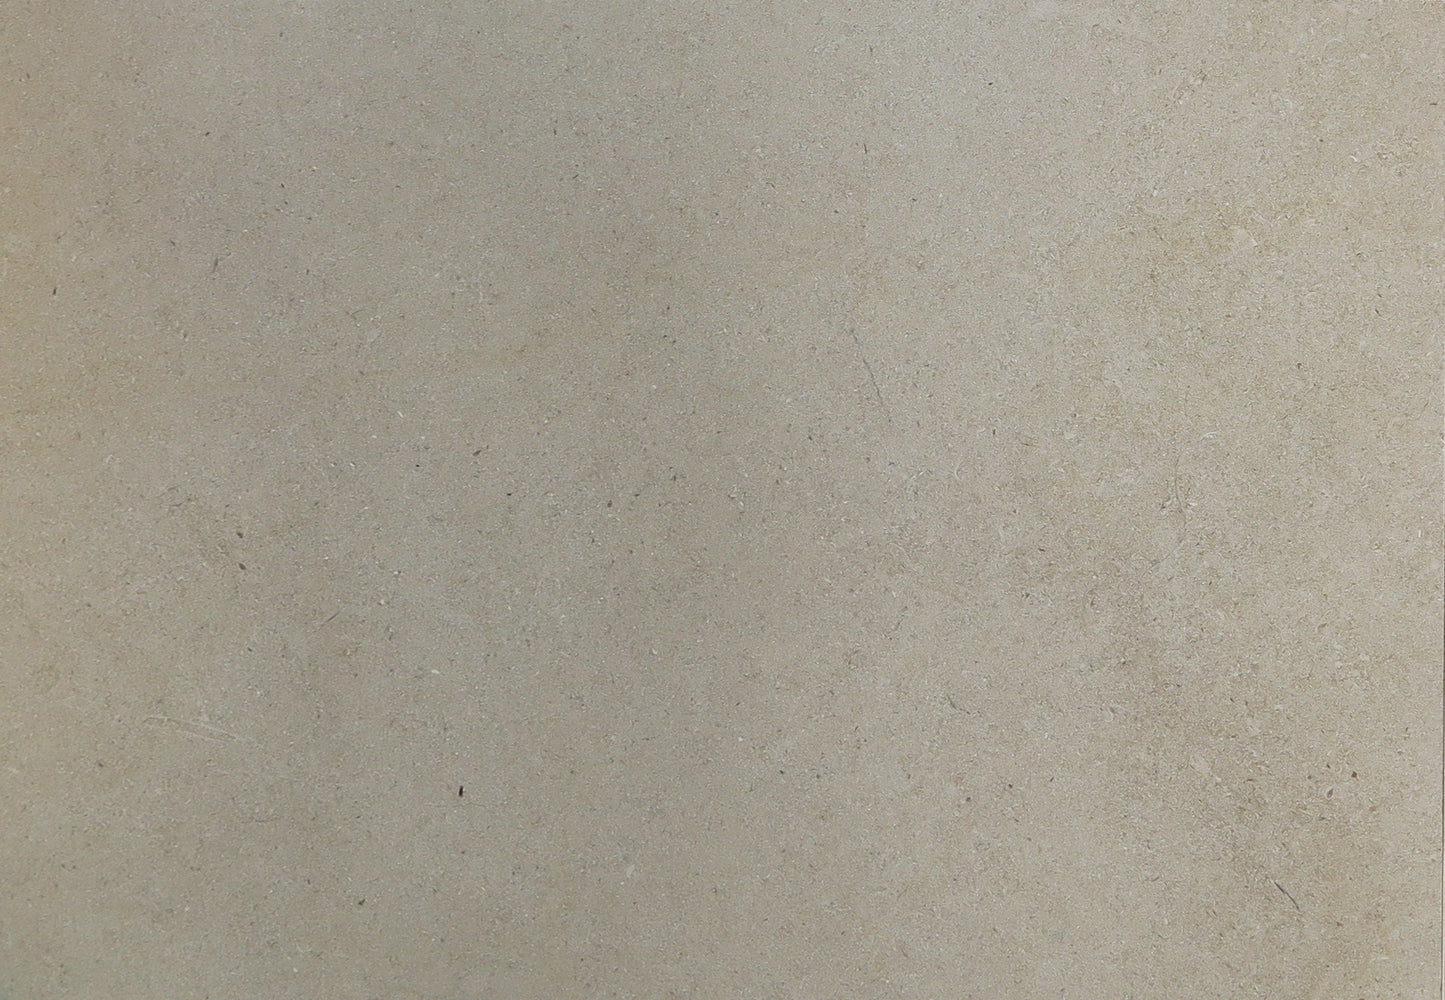 Honed Royal Satin Limestone Tile